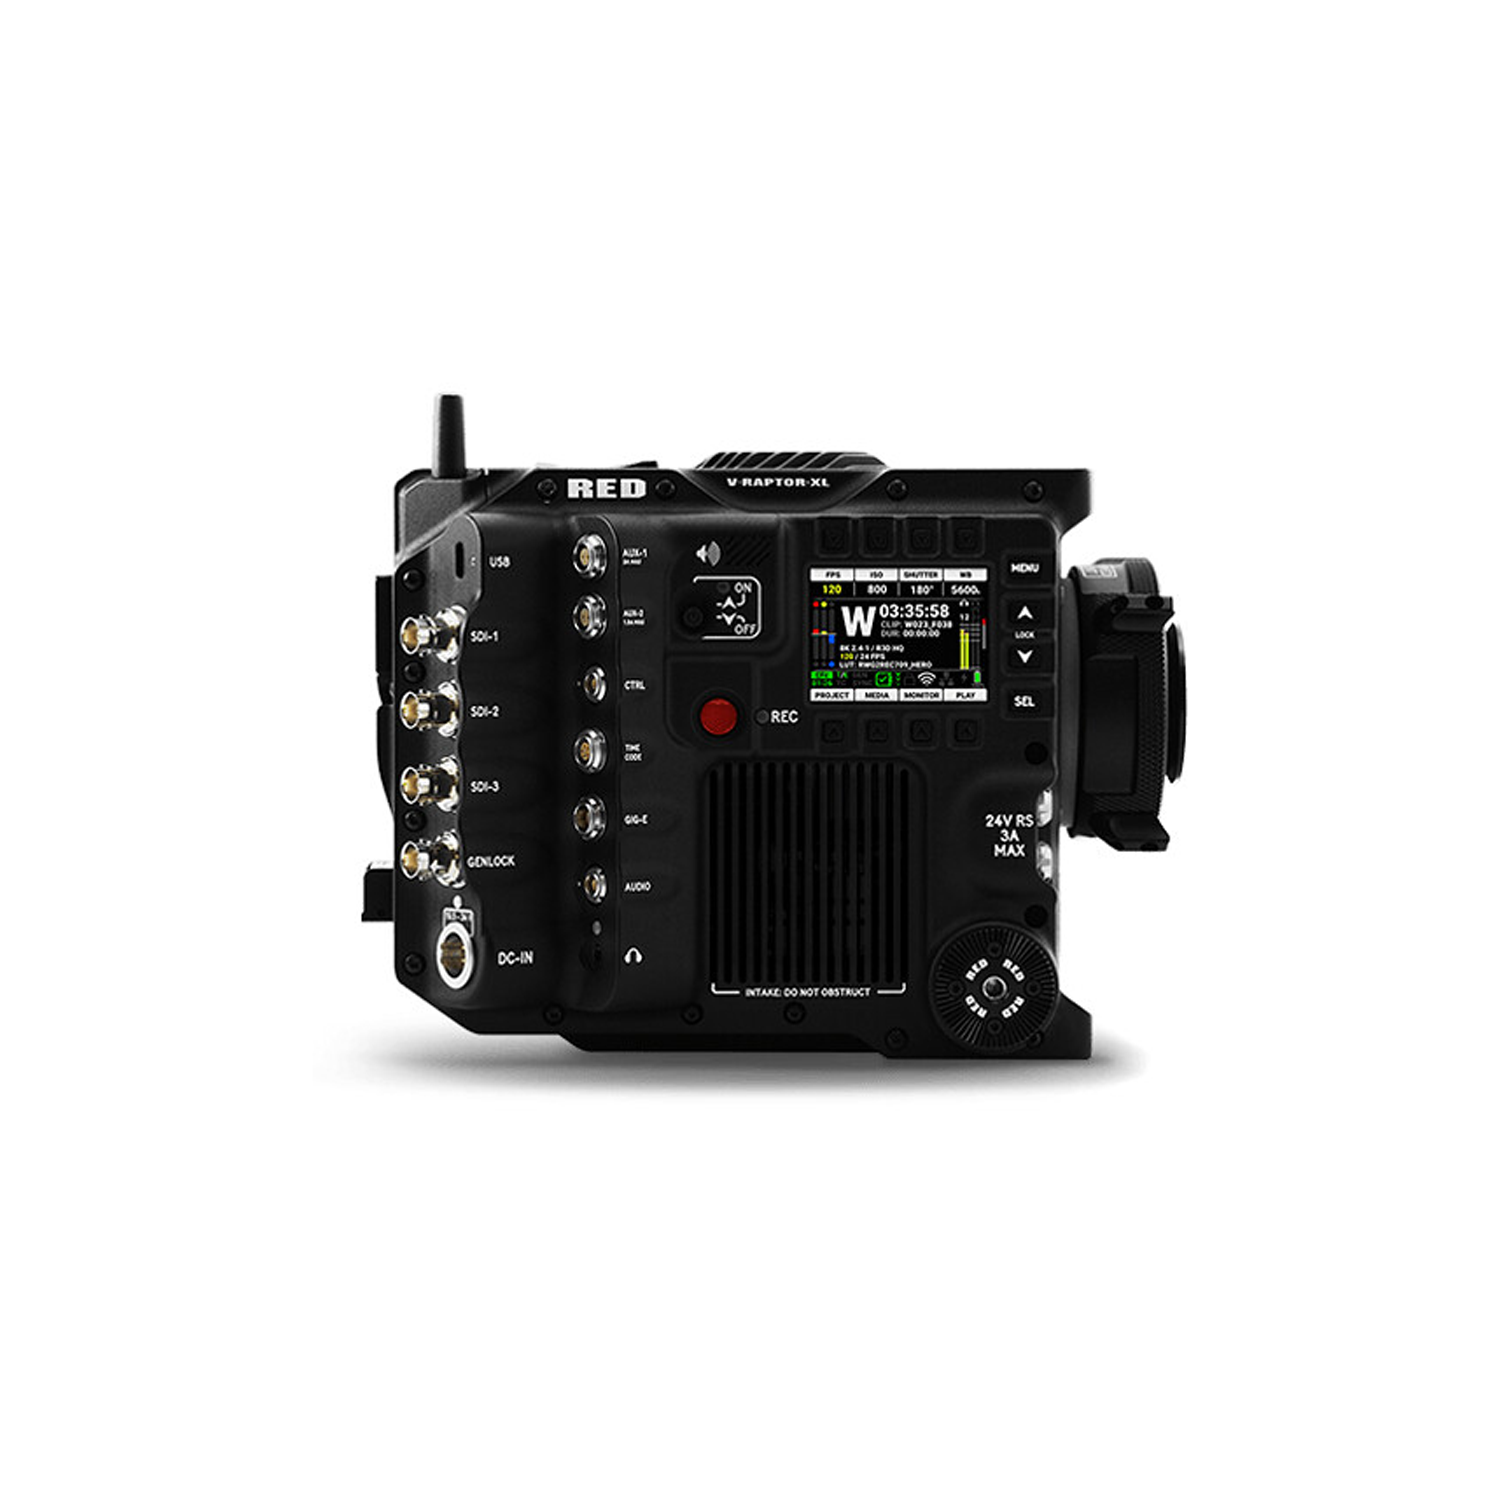 Red Digital Cinema V-Raptor XL 8K VV + 6K S35 CAME CAME DE SENSEUR - MONT GOLD